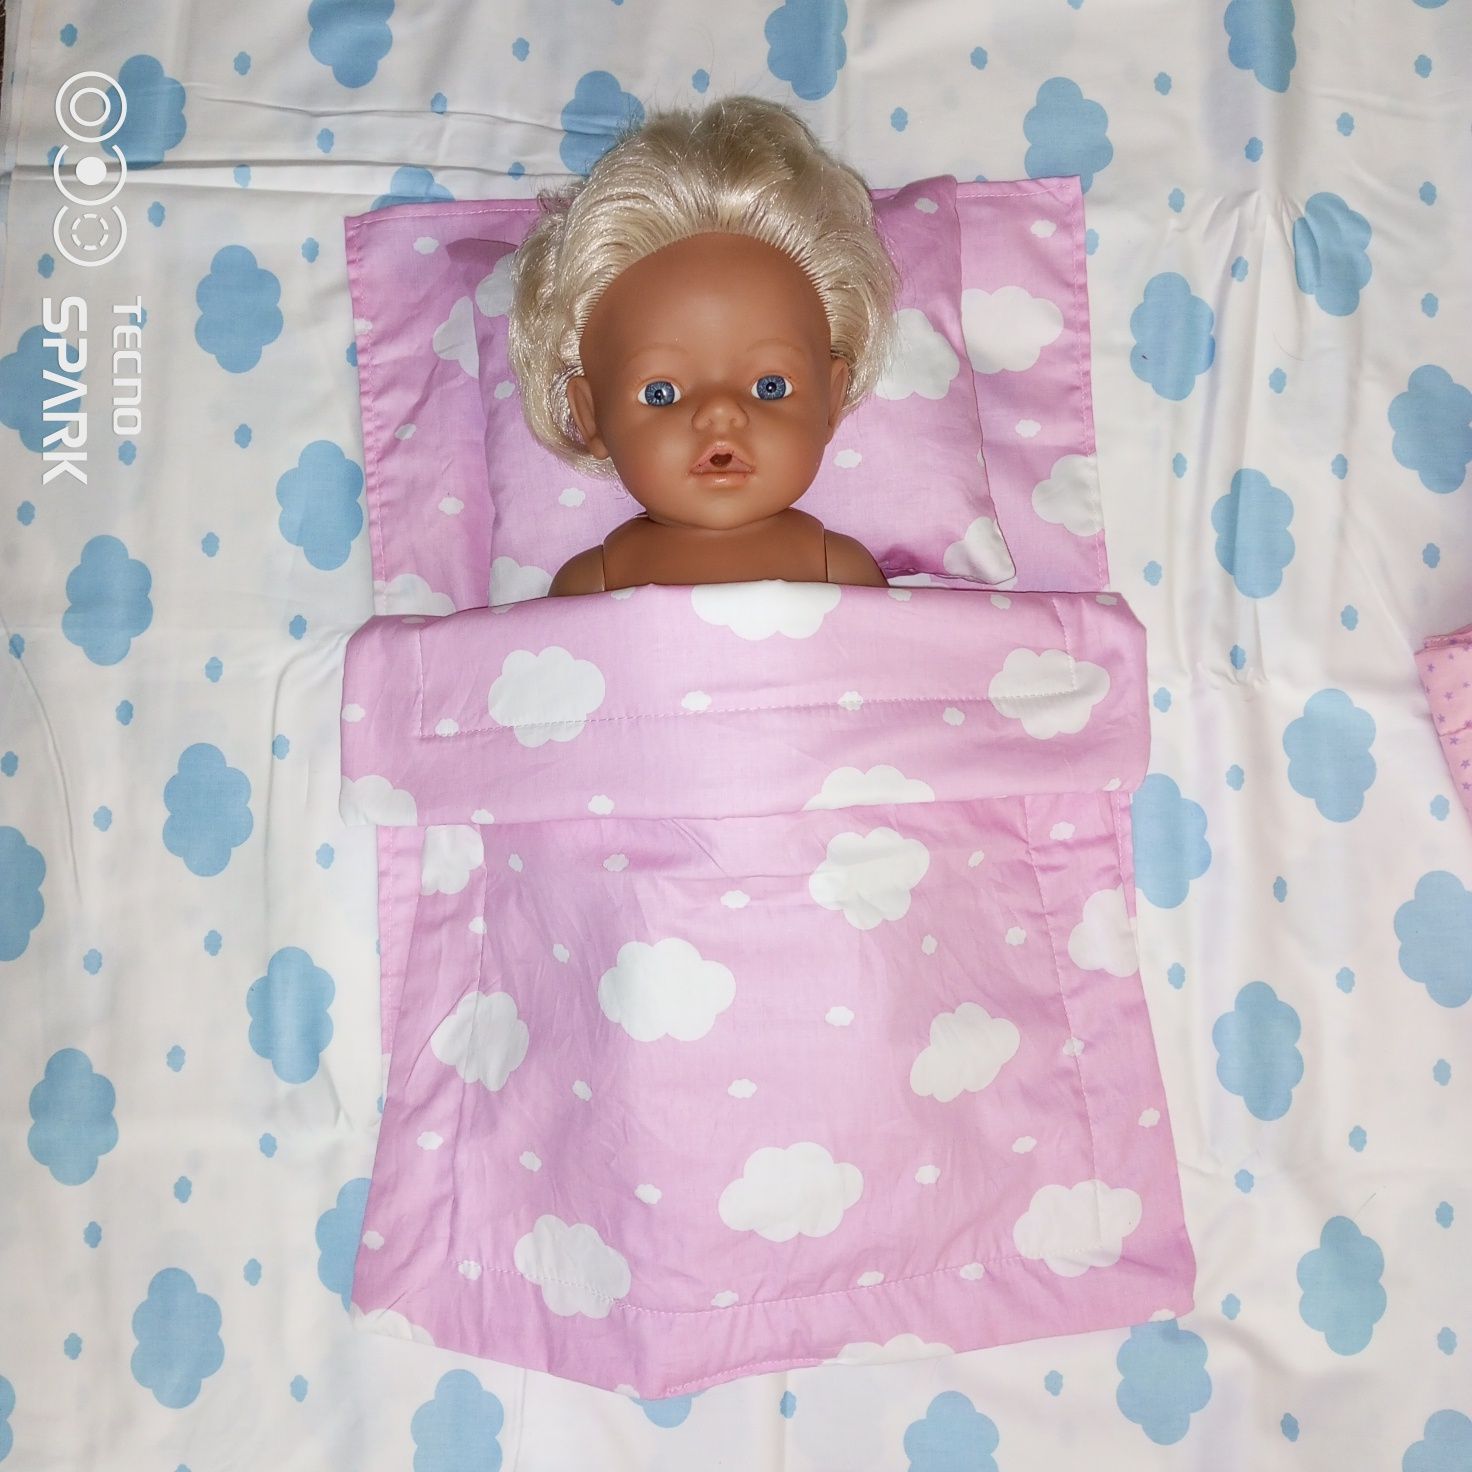 Іграшкова постіль для бебі Борн пупса в ліжечко пледик плюшевий  baby